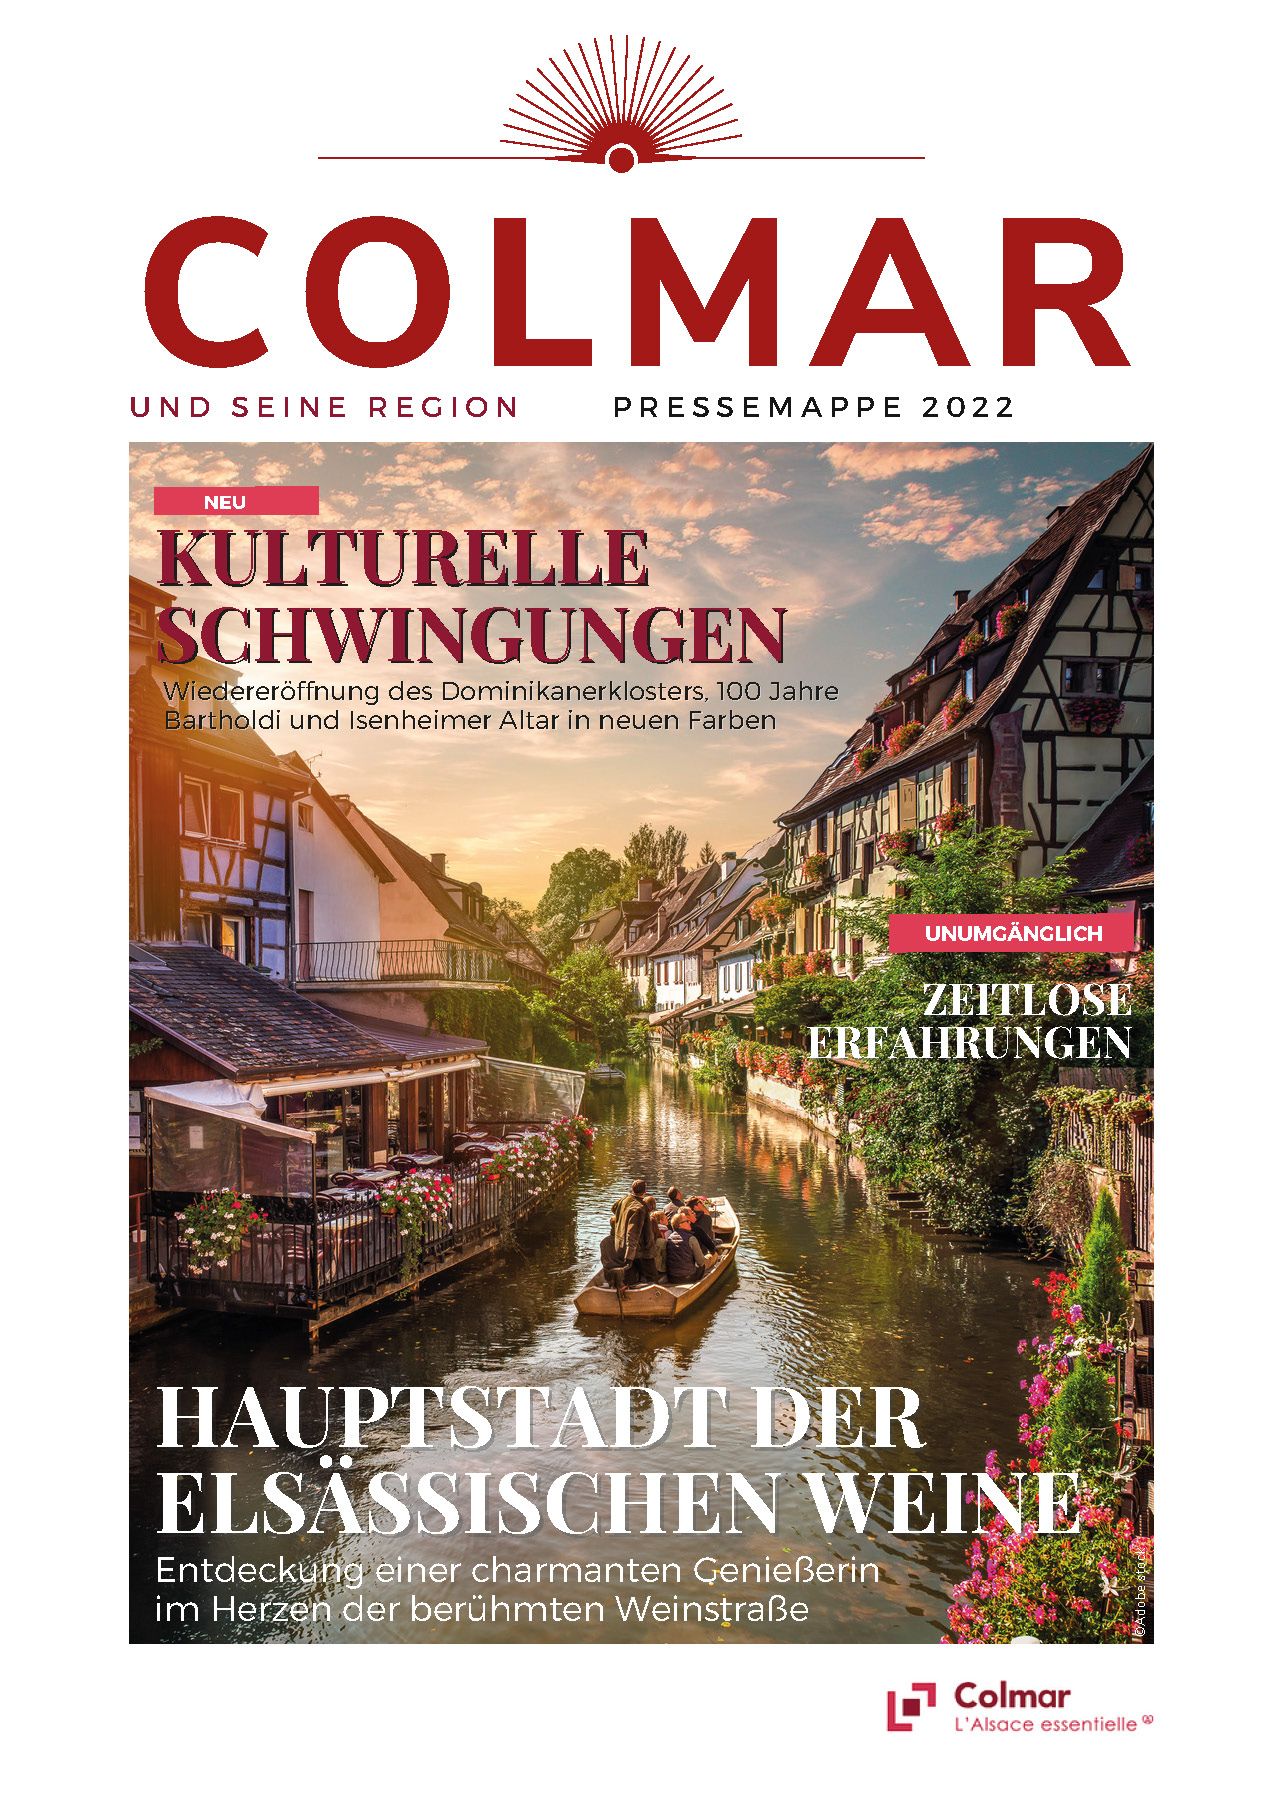 Colmar pressemappe cover